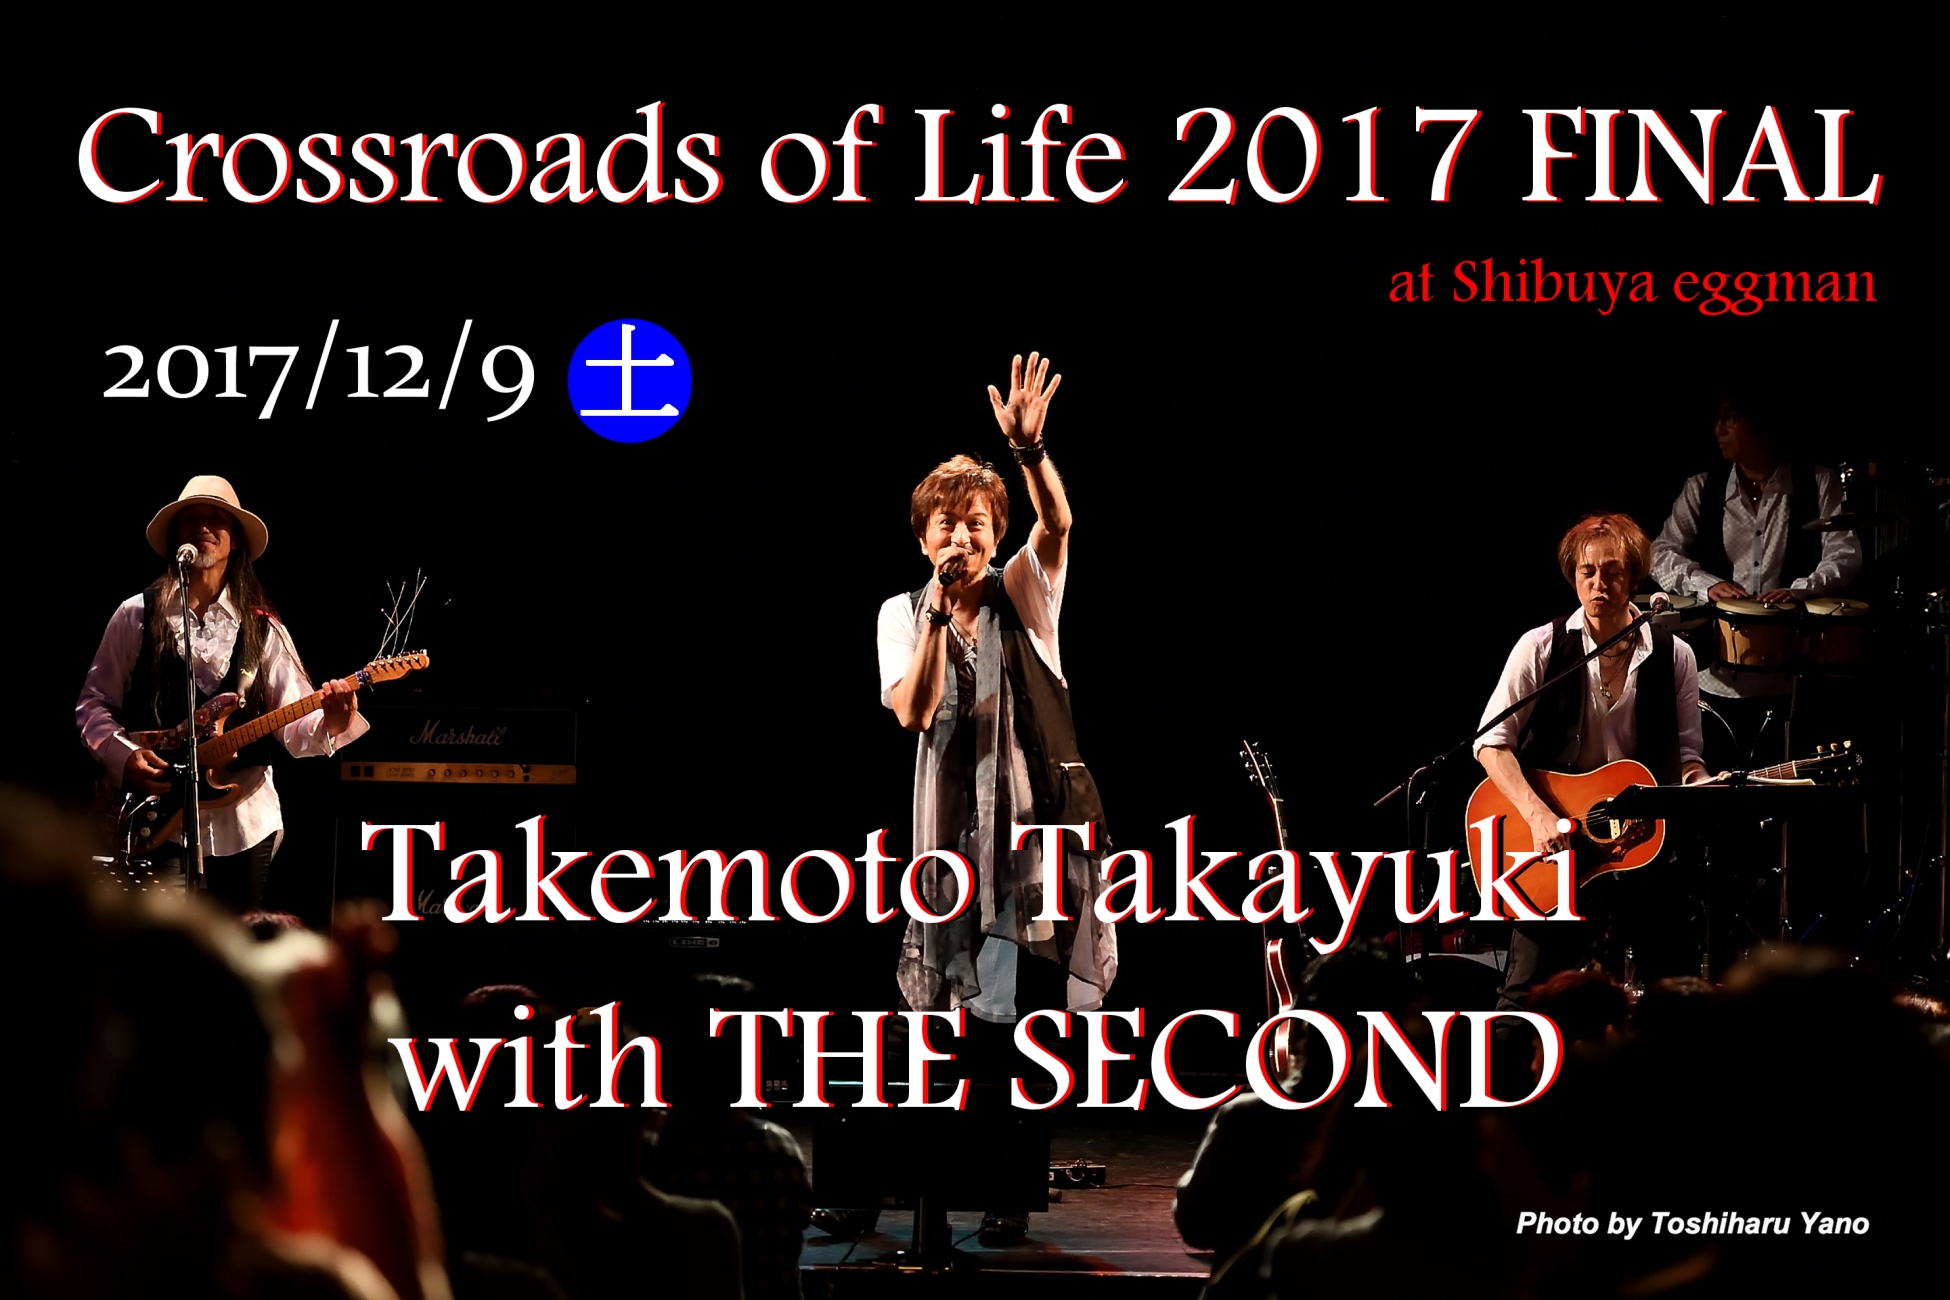 竹本孝之 Live tour 「Crossroads of Life 」 in 東京 2017 FINAL